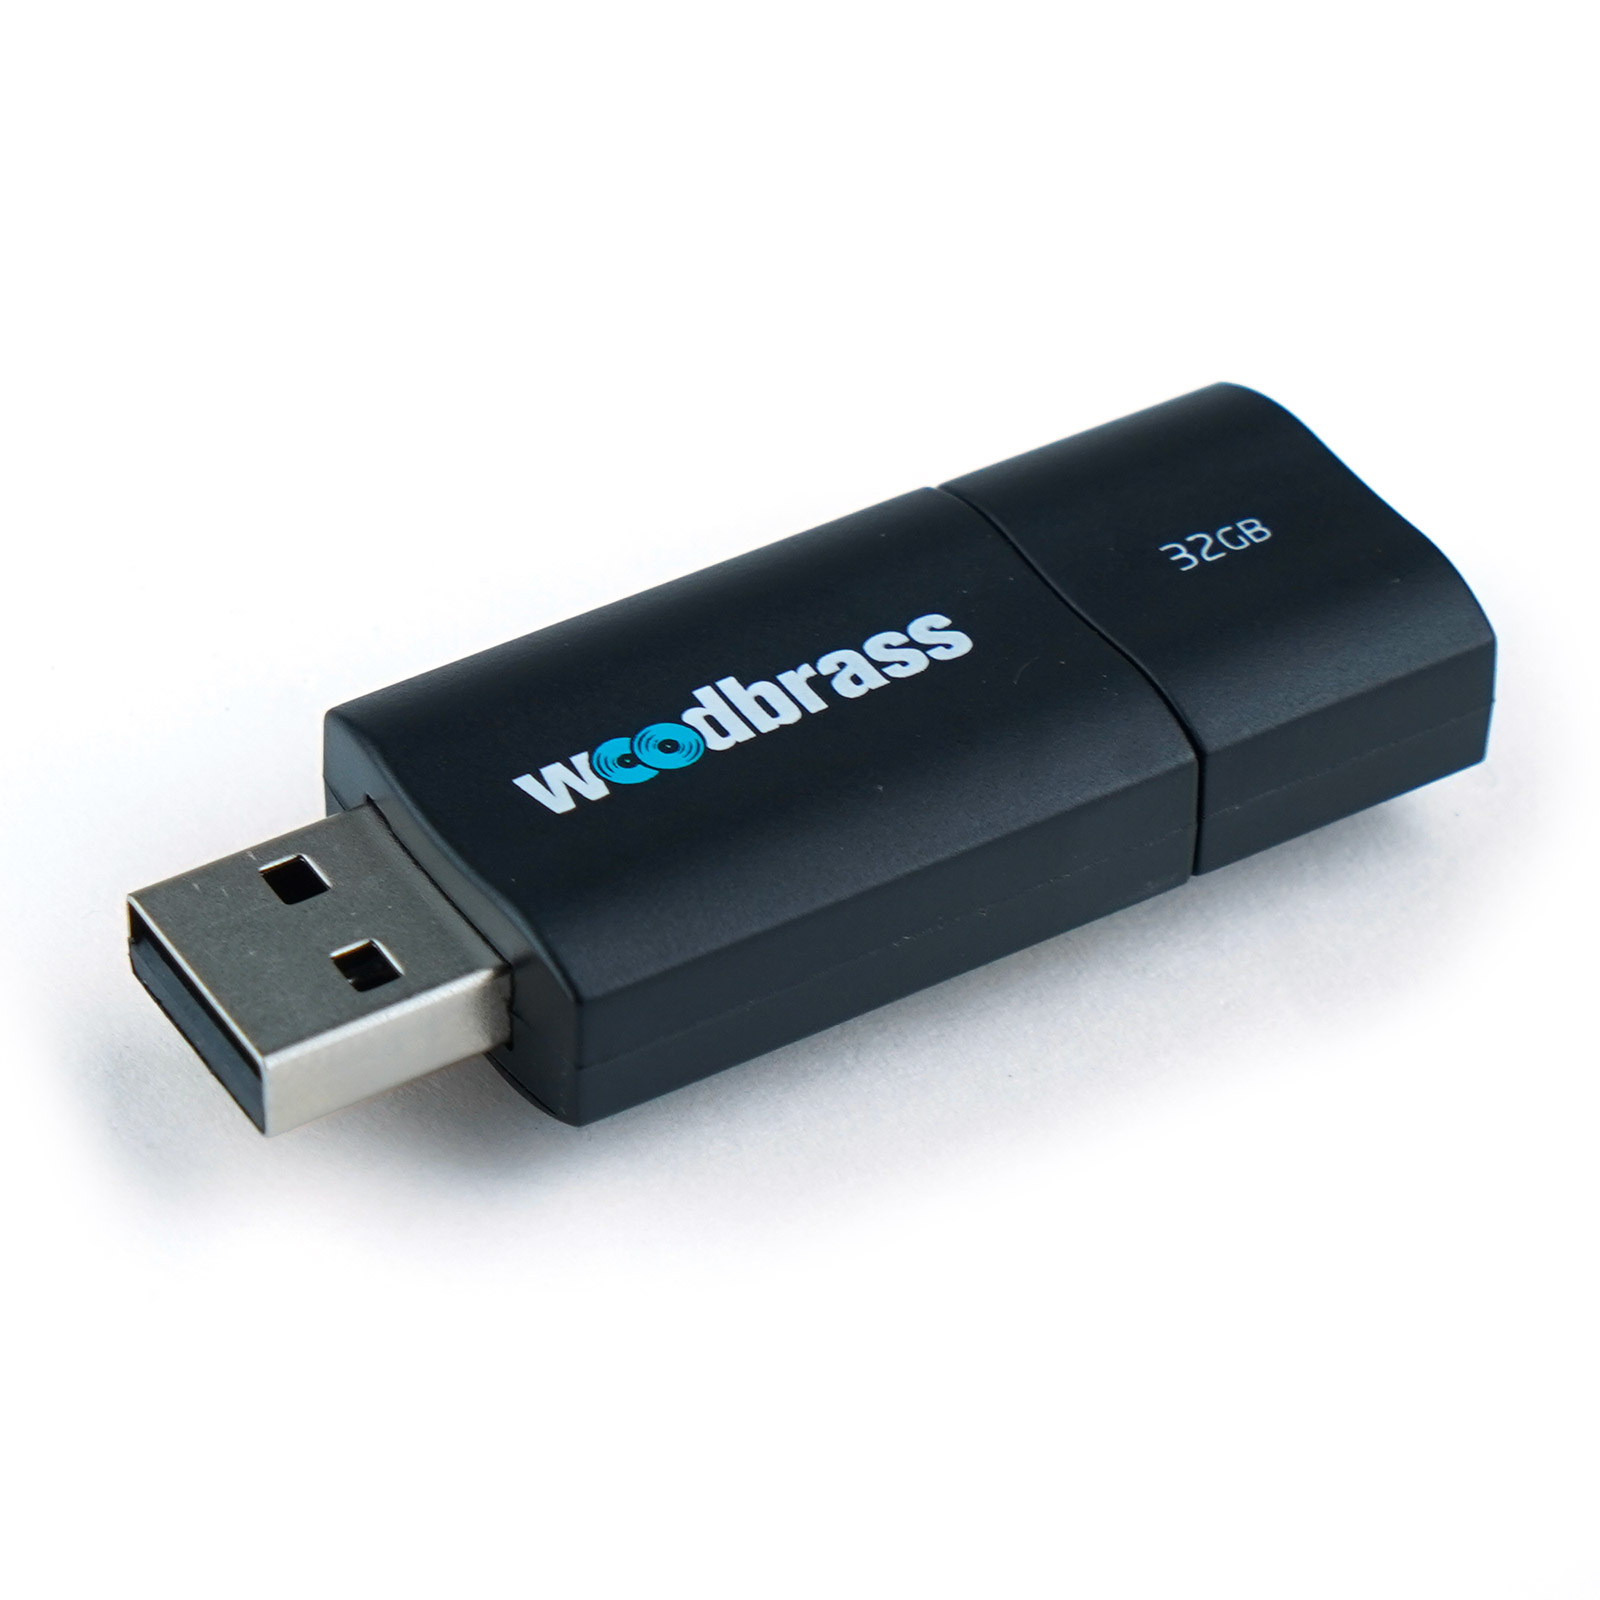 WOODBRASS USB KEY 32GB